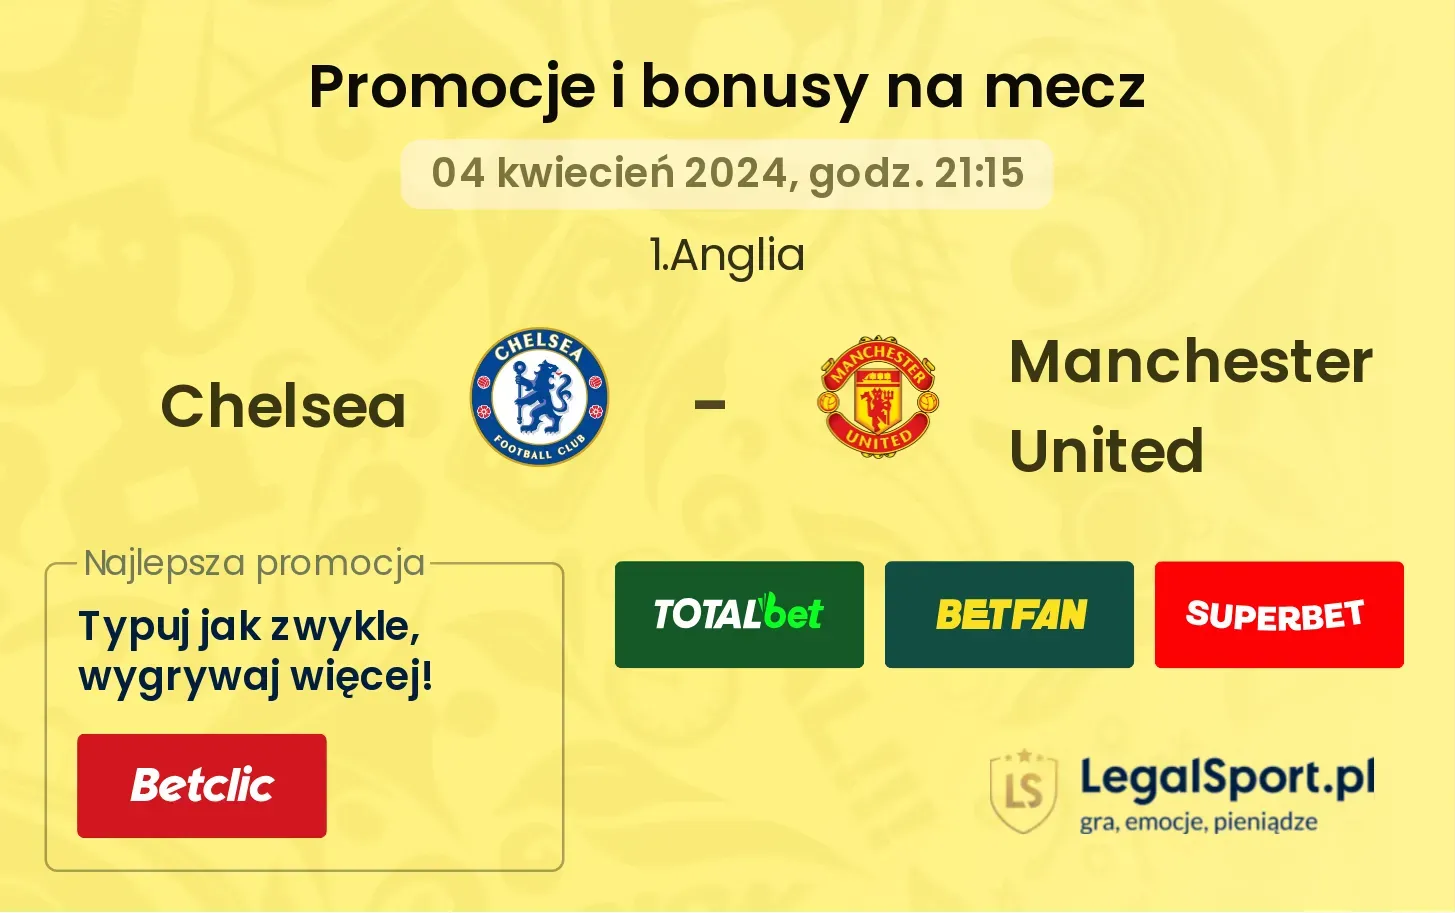 Chelsea - Manchester United promocje bonusy na mecz